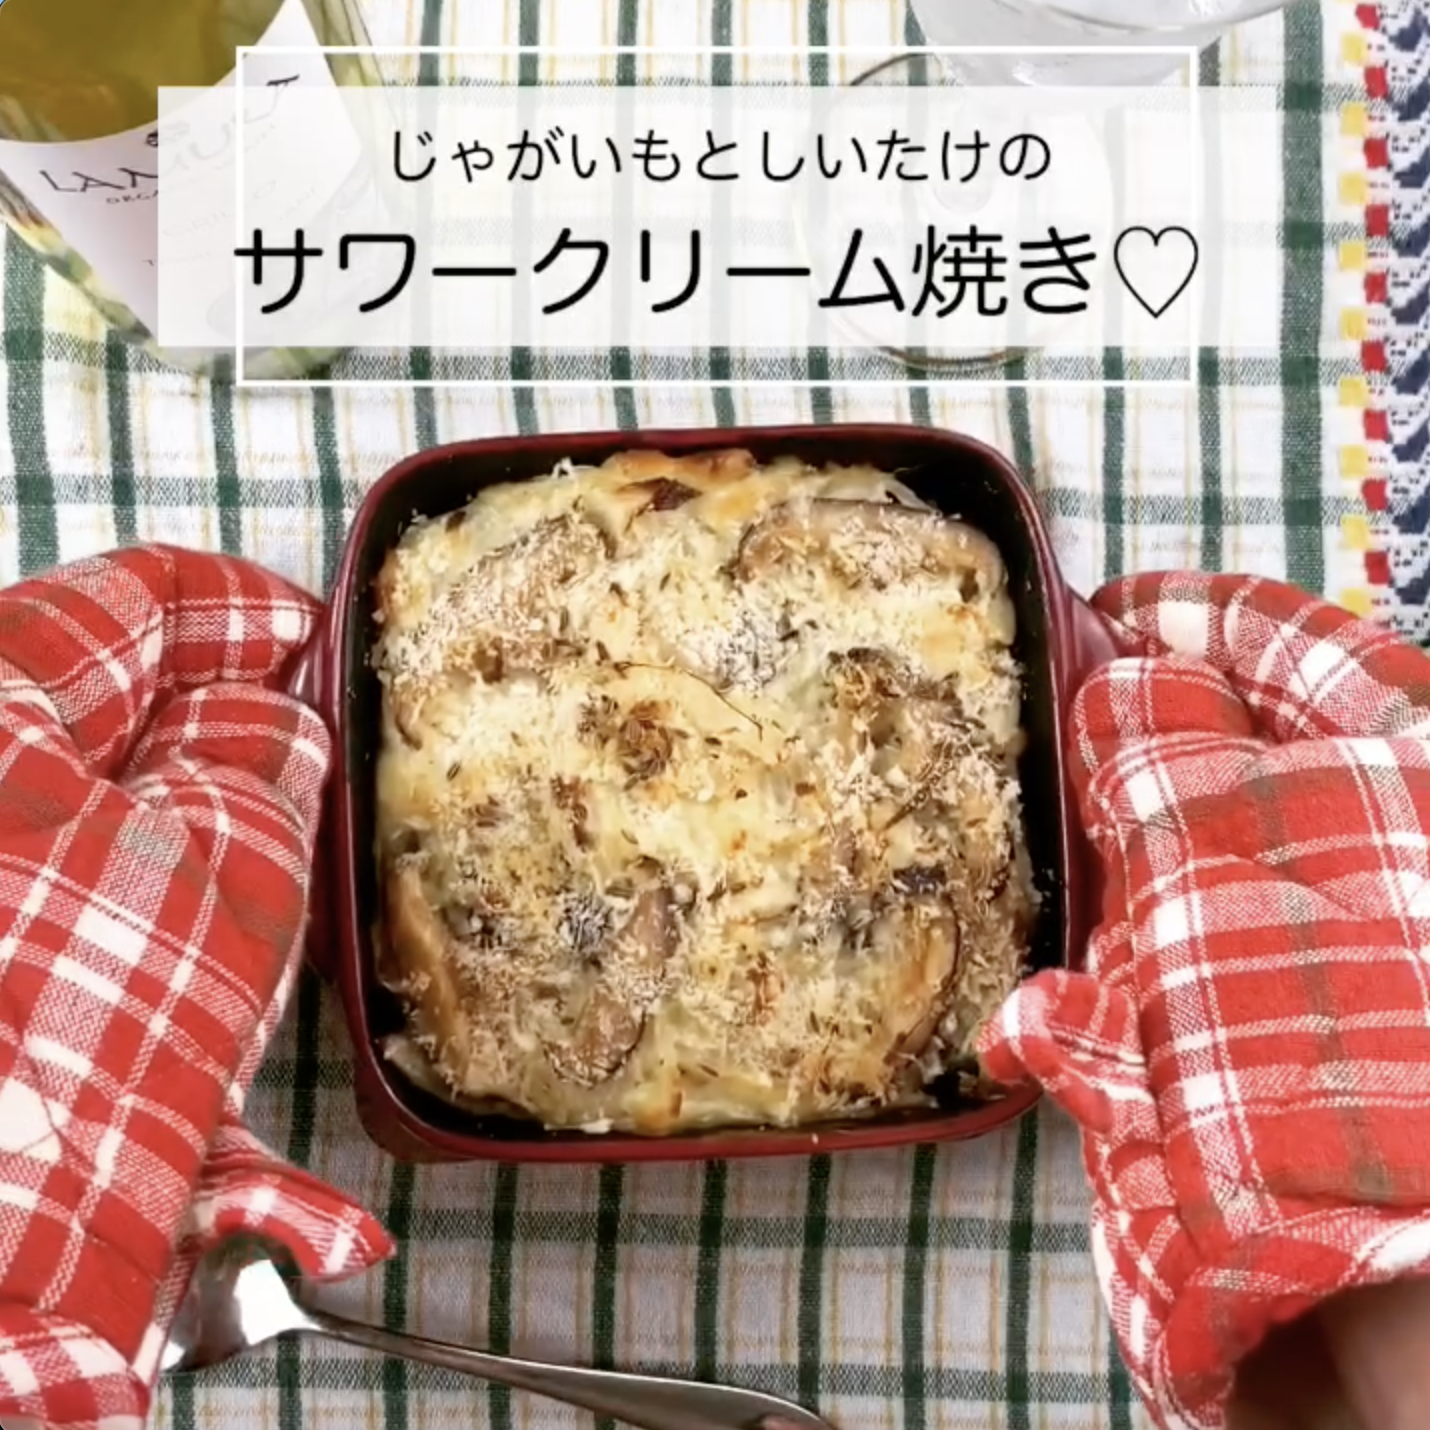 しいたけとじゃがいものサワークリーム焼き のレシピ Shiitake Recipe